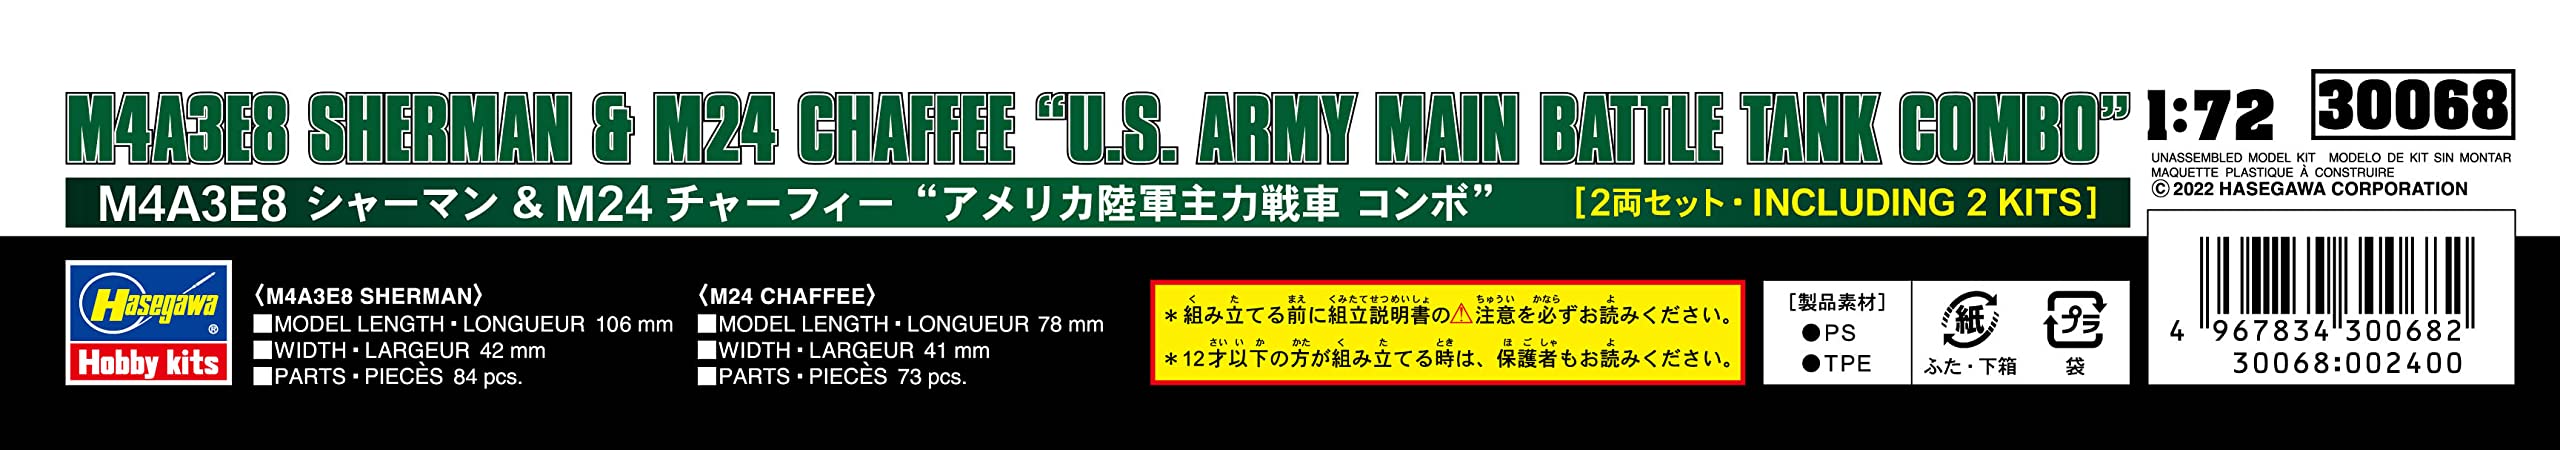 1/72 M4A3E8 SHERMAN & M24 CHAFFEE U.S. ARMY MAIN BATTLE TANK COMBO kit 30068 NEW_7